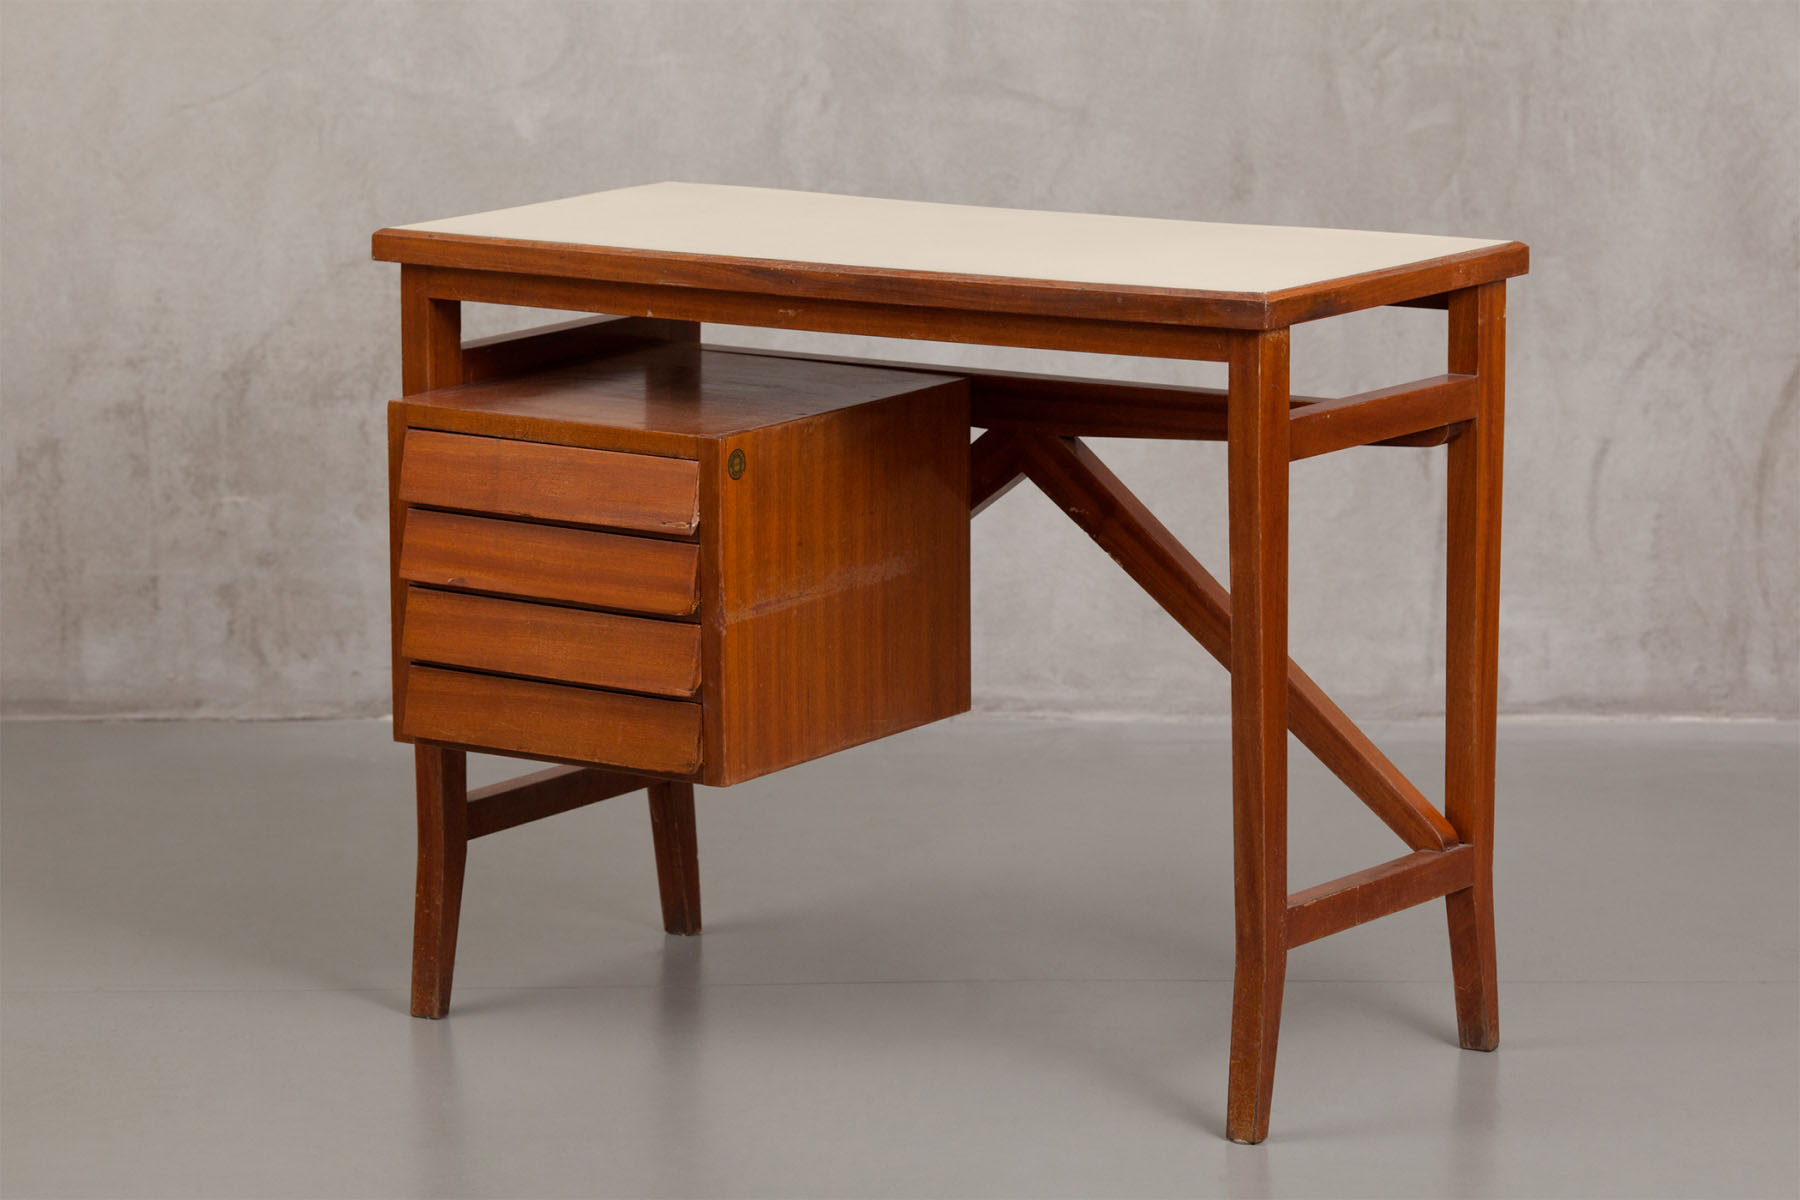 Little desk Gio Ponti pic-1